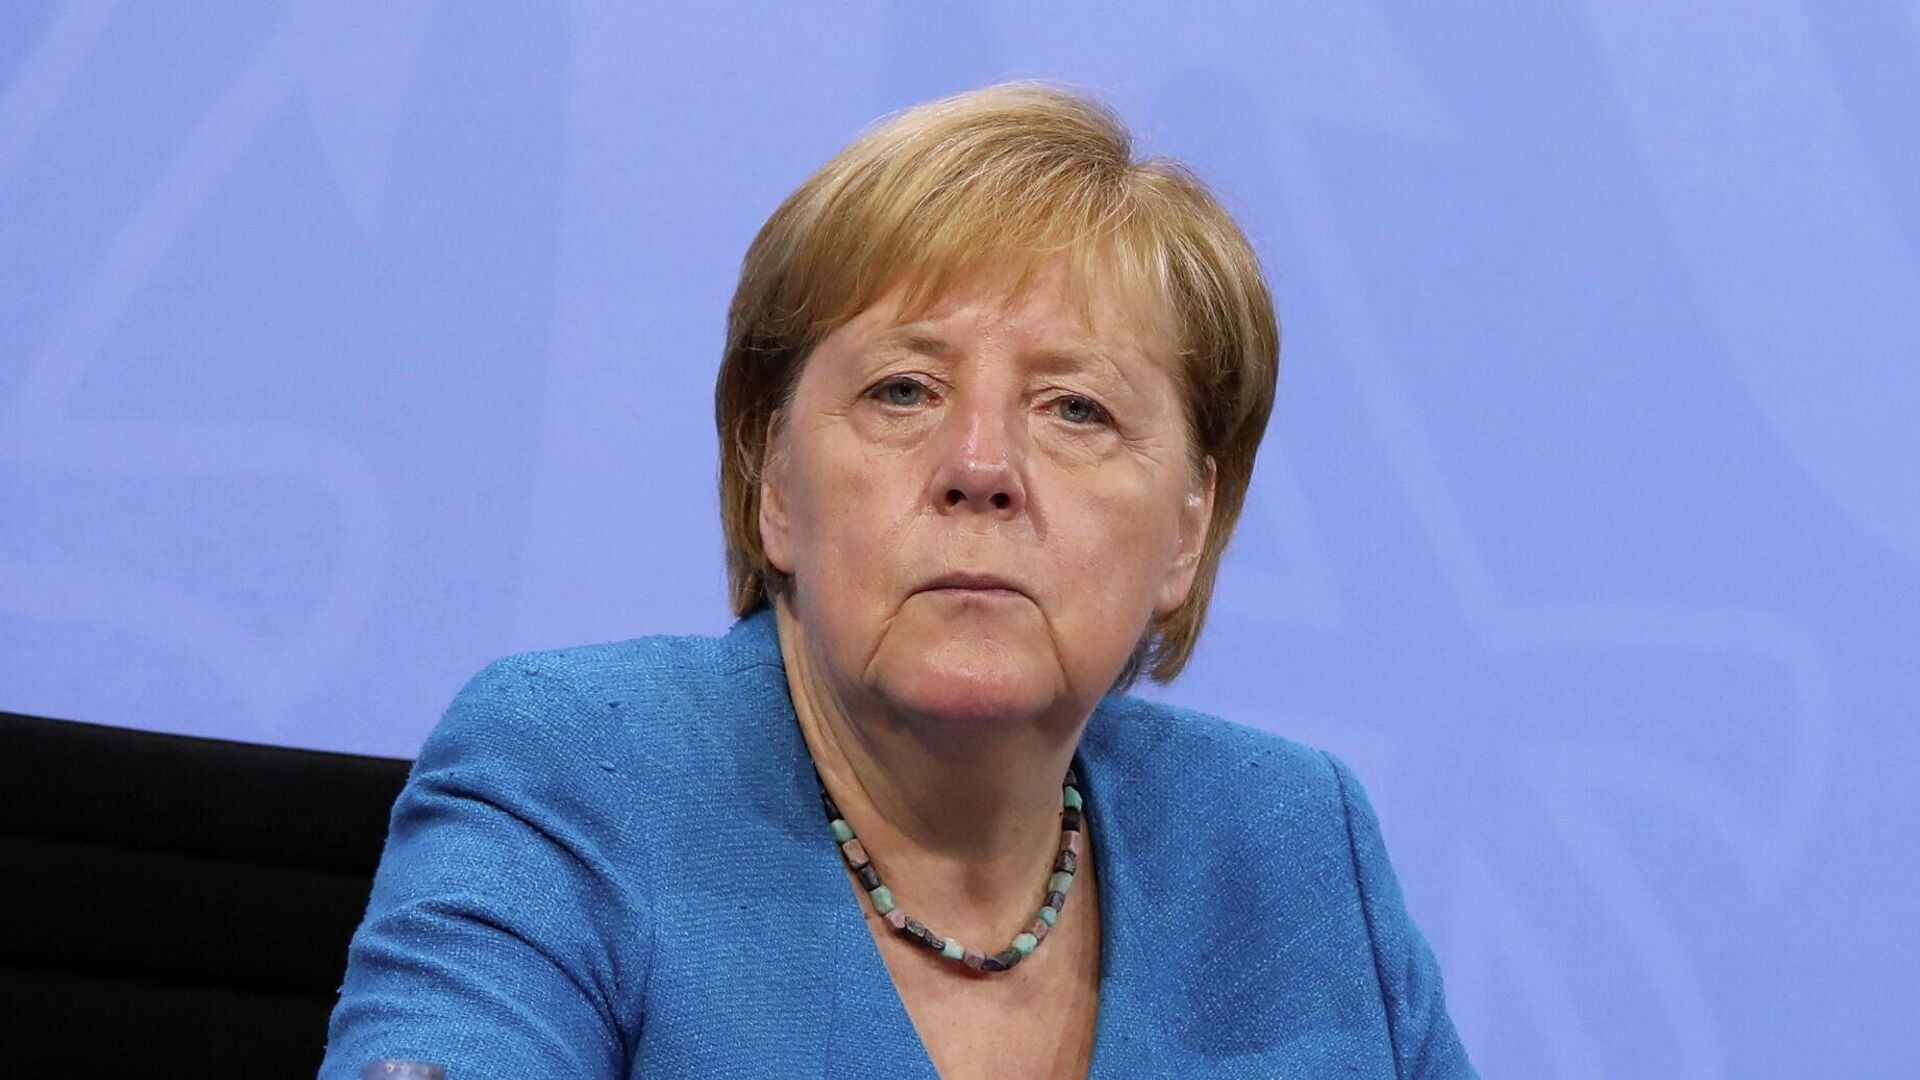 Vokietijos kanclerė Angela Merkel - Sputnik Lietuva, 1920, 22.08.2021